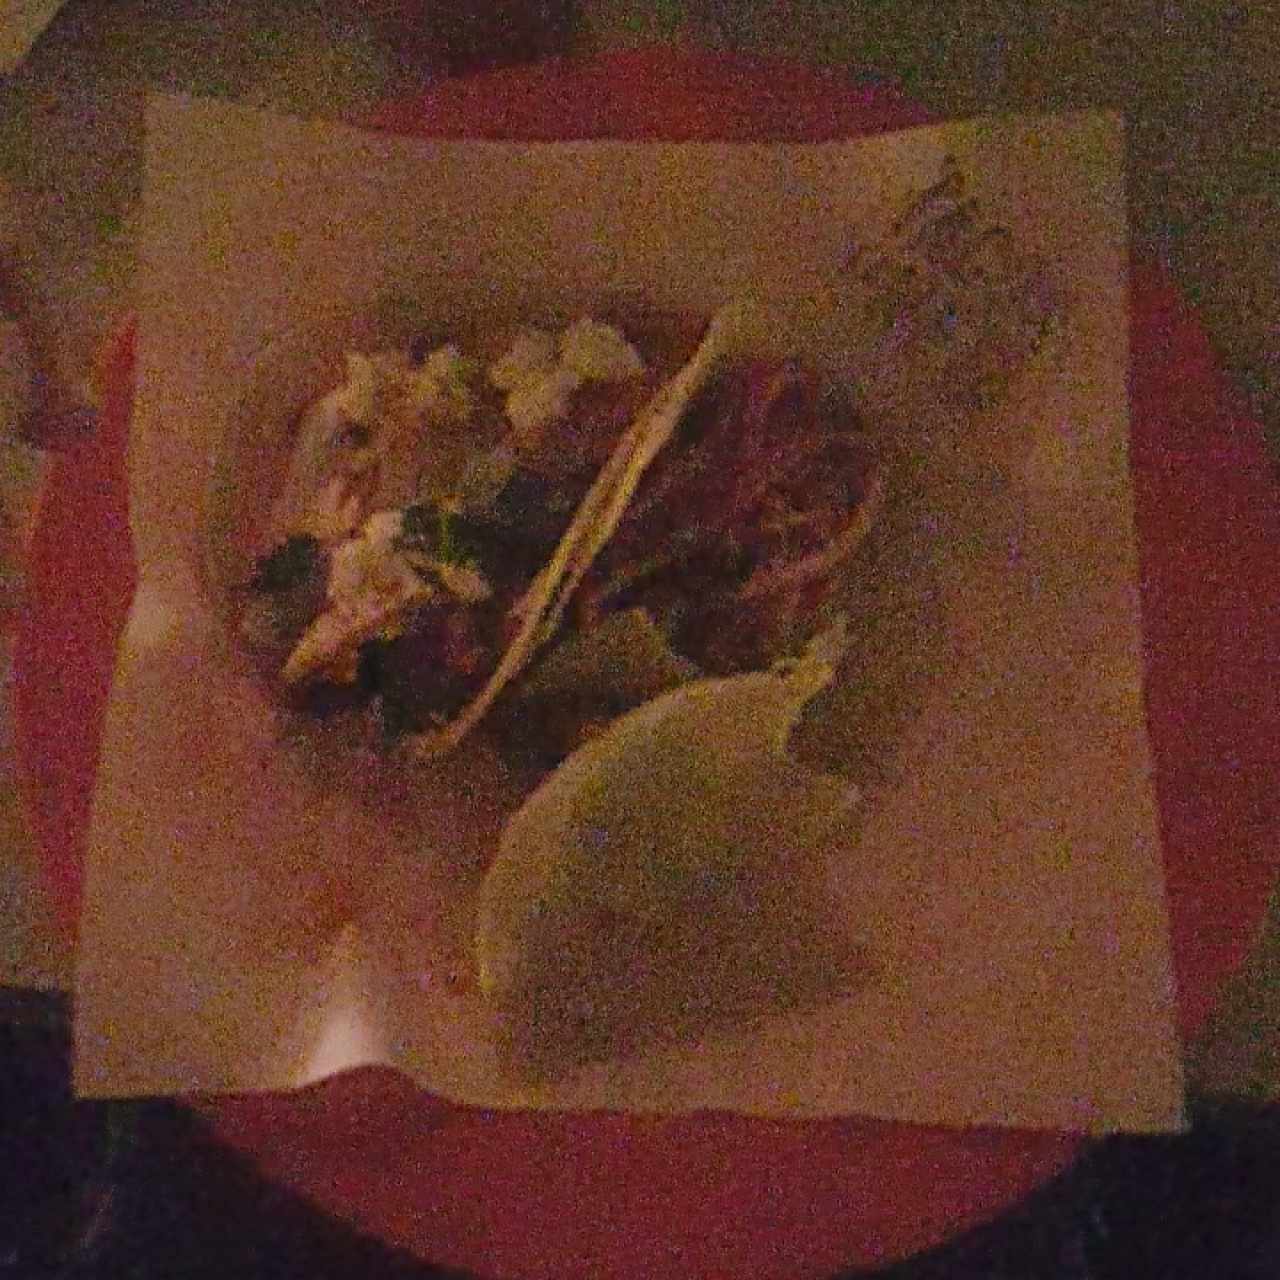 3 tacos